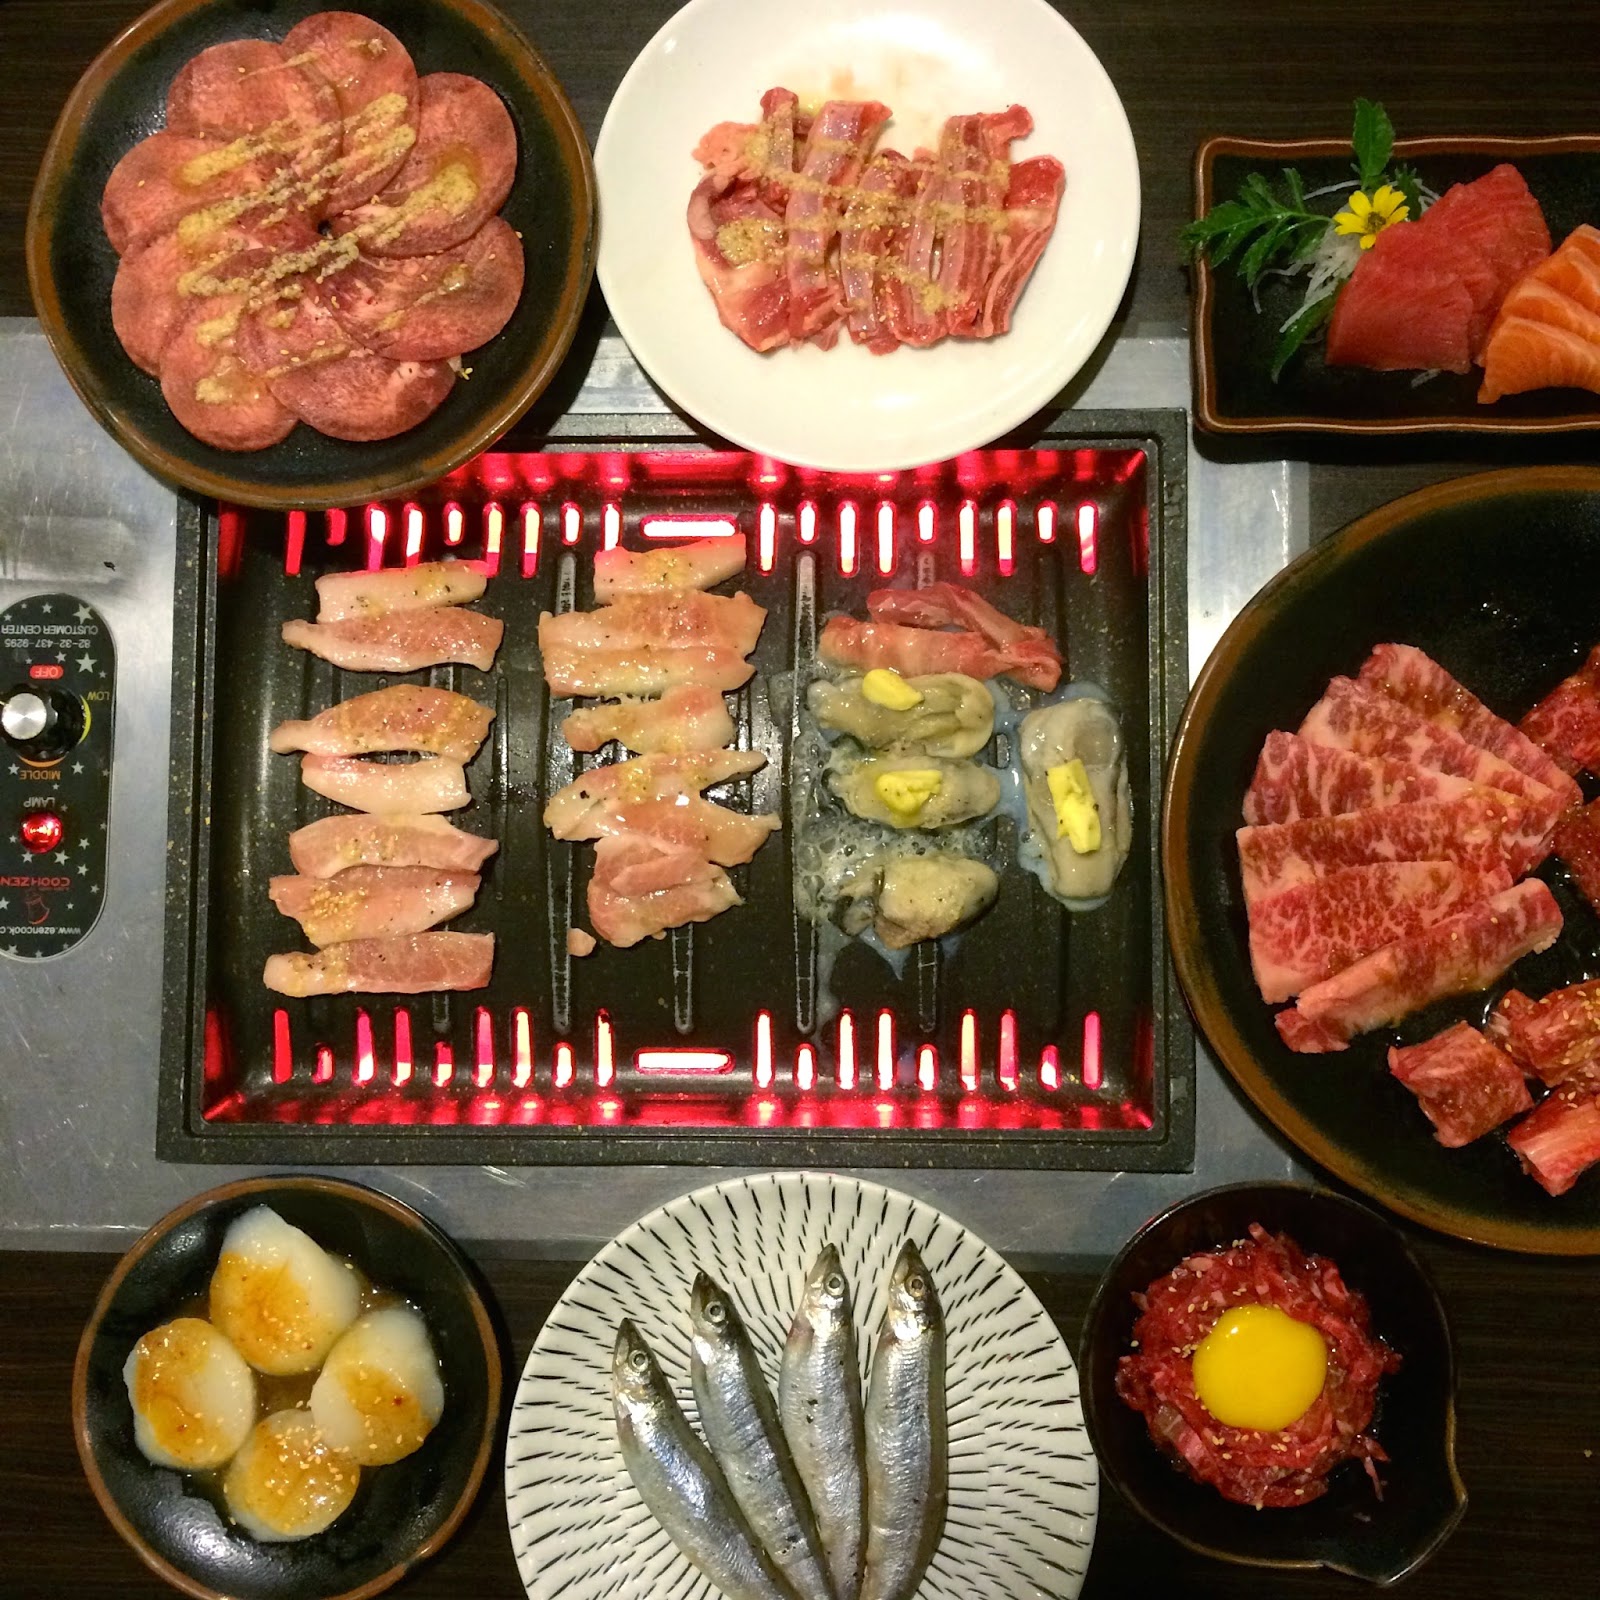 Tenkaichi Japanese BBQ Restaurant – All You Can Eat Wagyu Beef – A L A I N  L I C I O U S